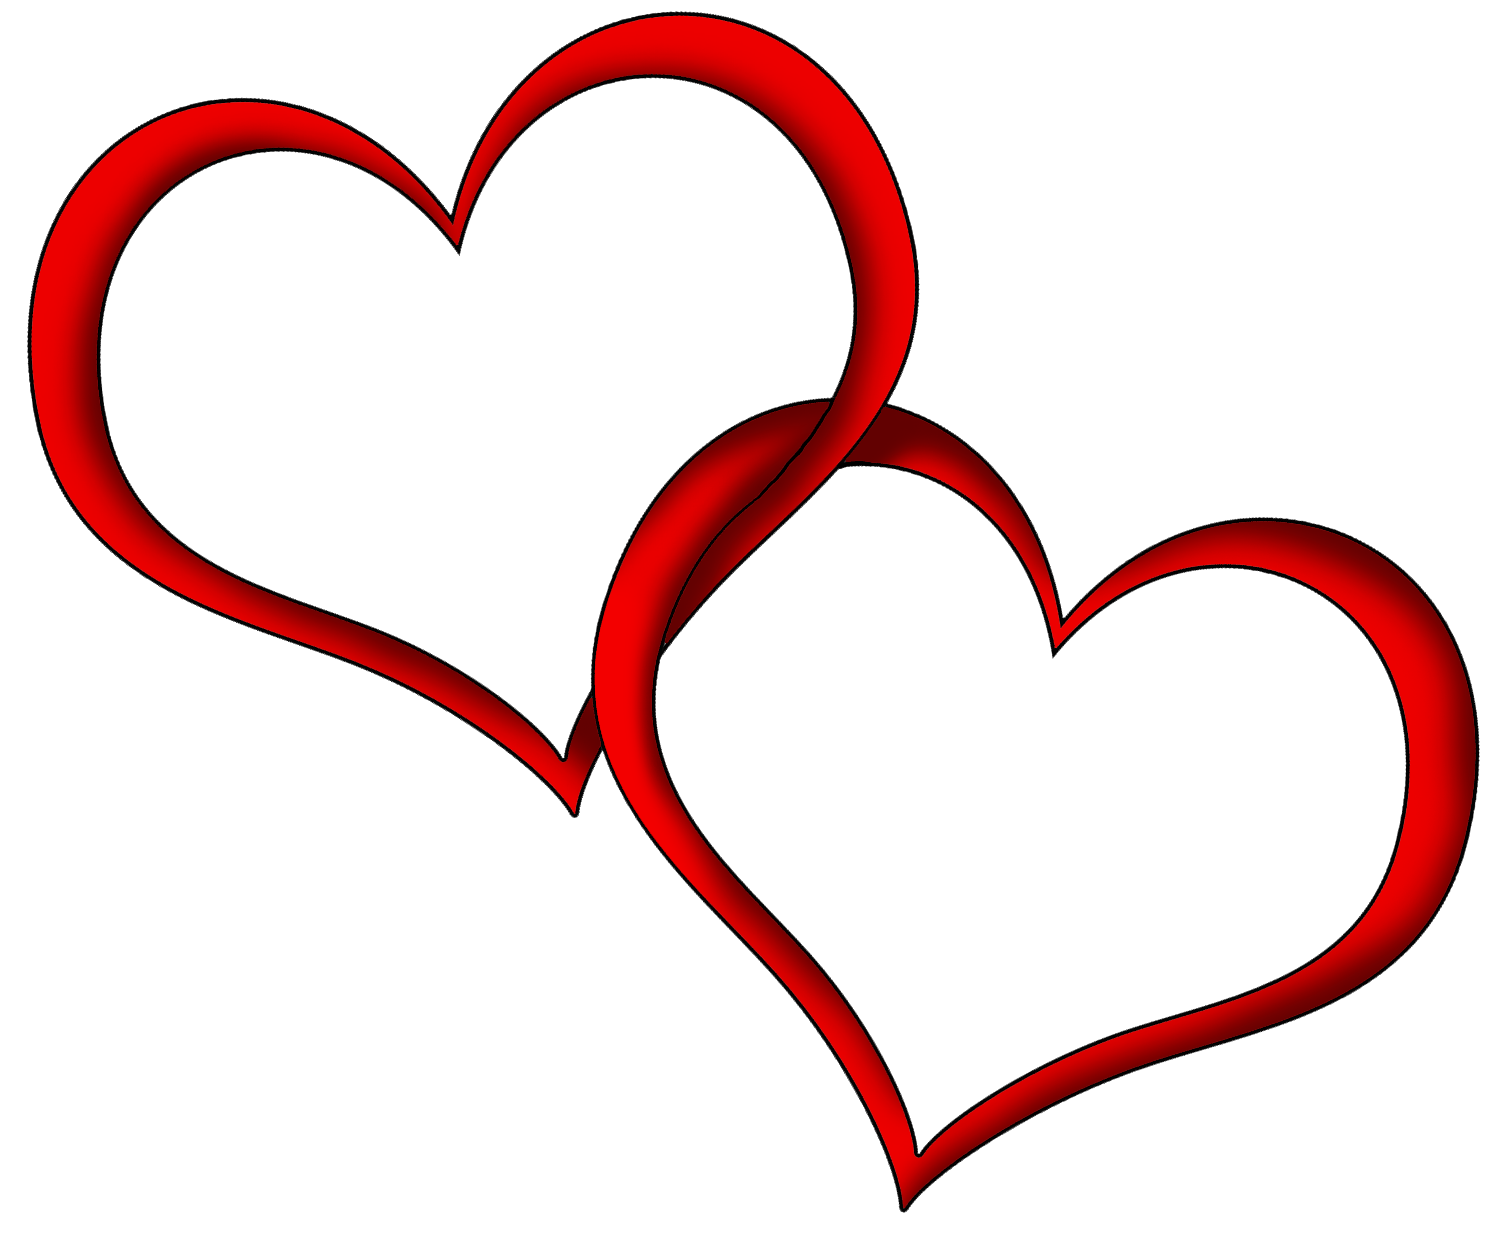 Hearts heart clip art heart image 